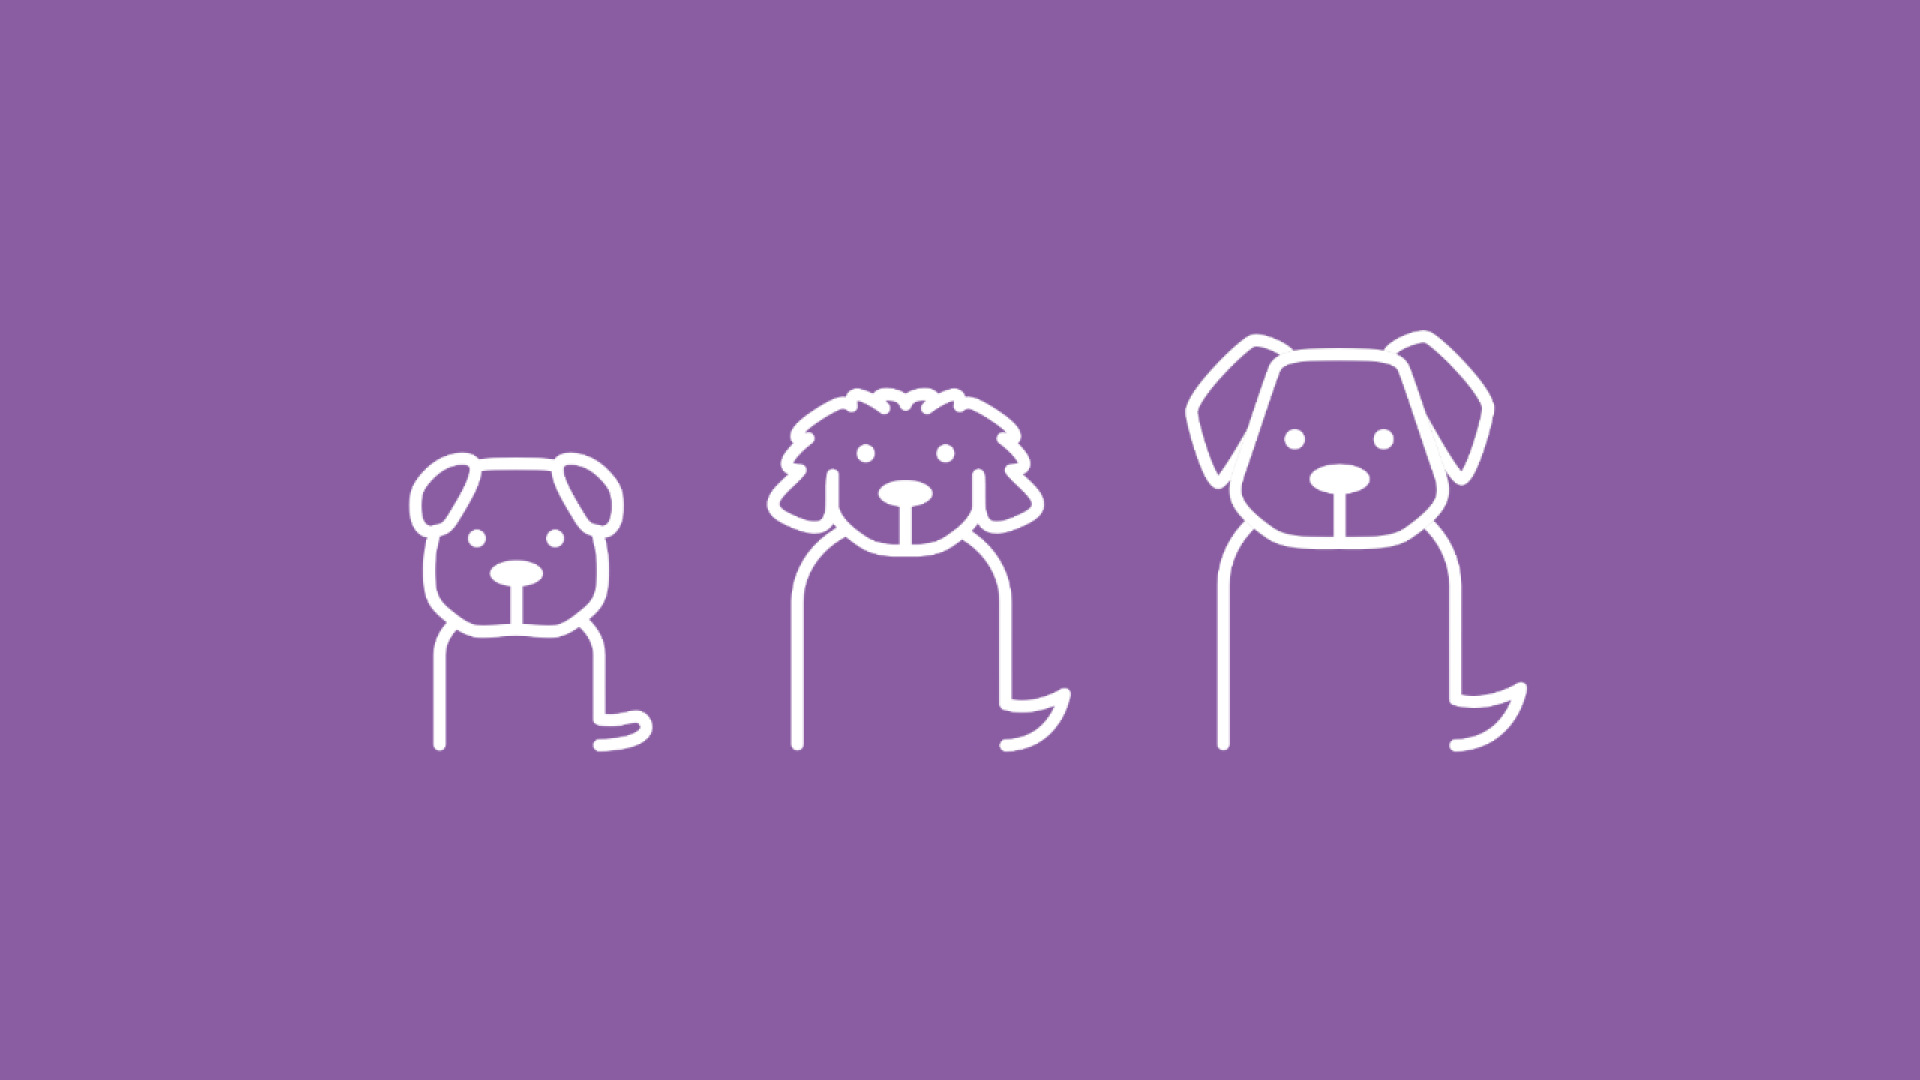 Auf der Graifk sind drei unterschiedliche Hunderassen, die unterschiedlich groß sind, abgebildet.